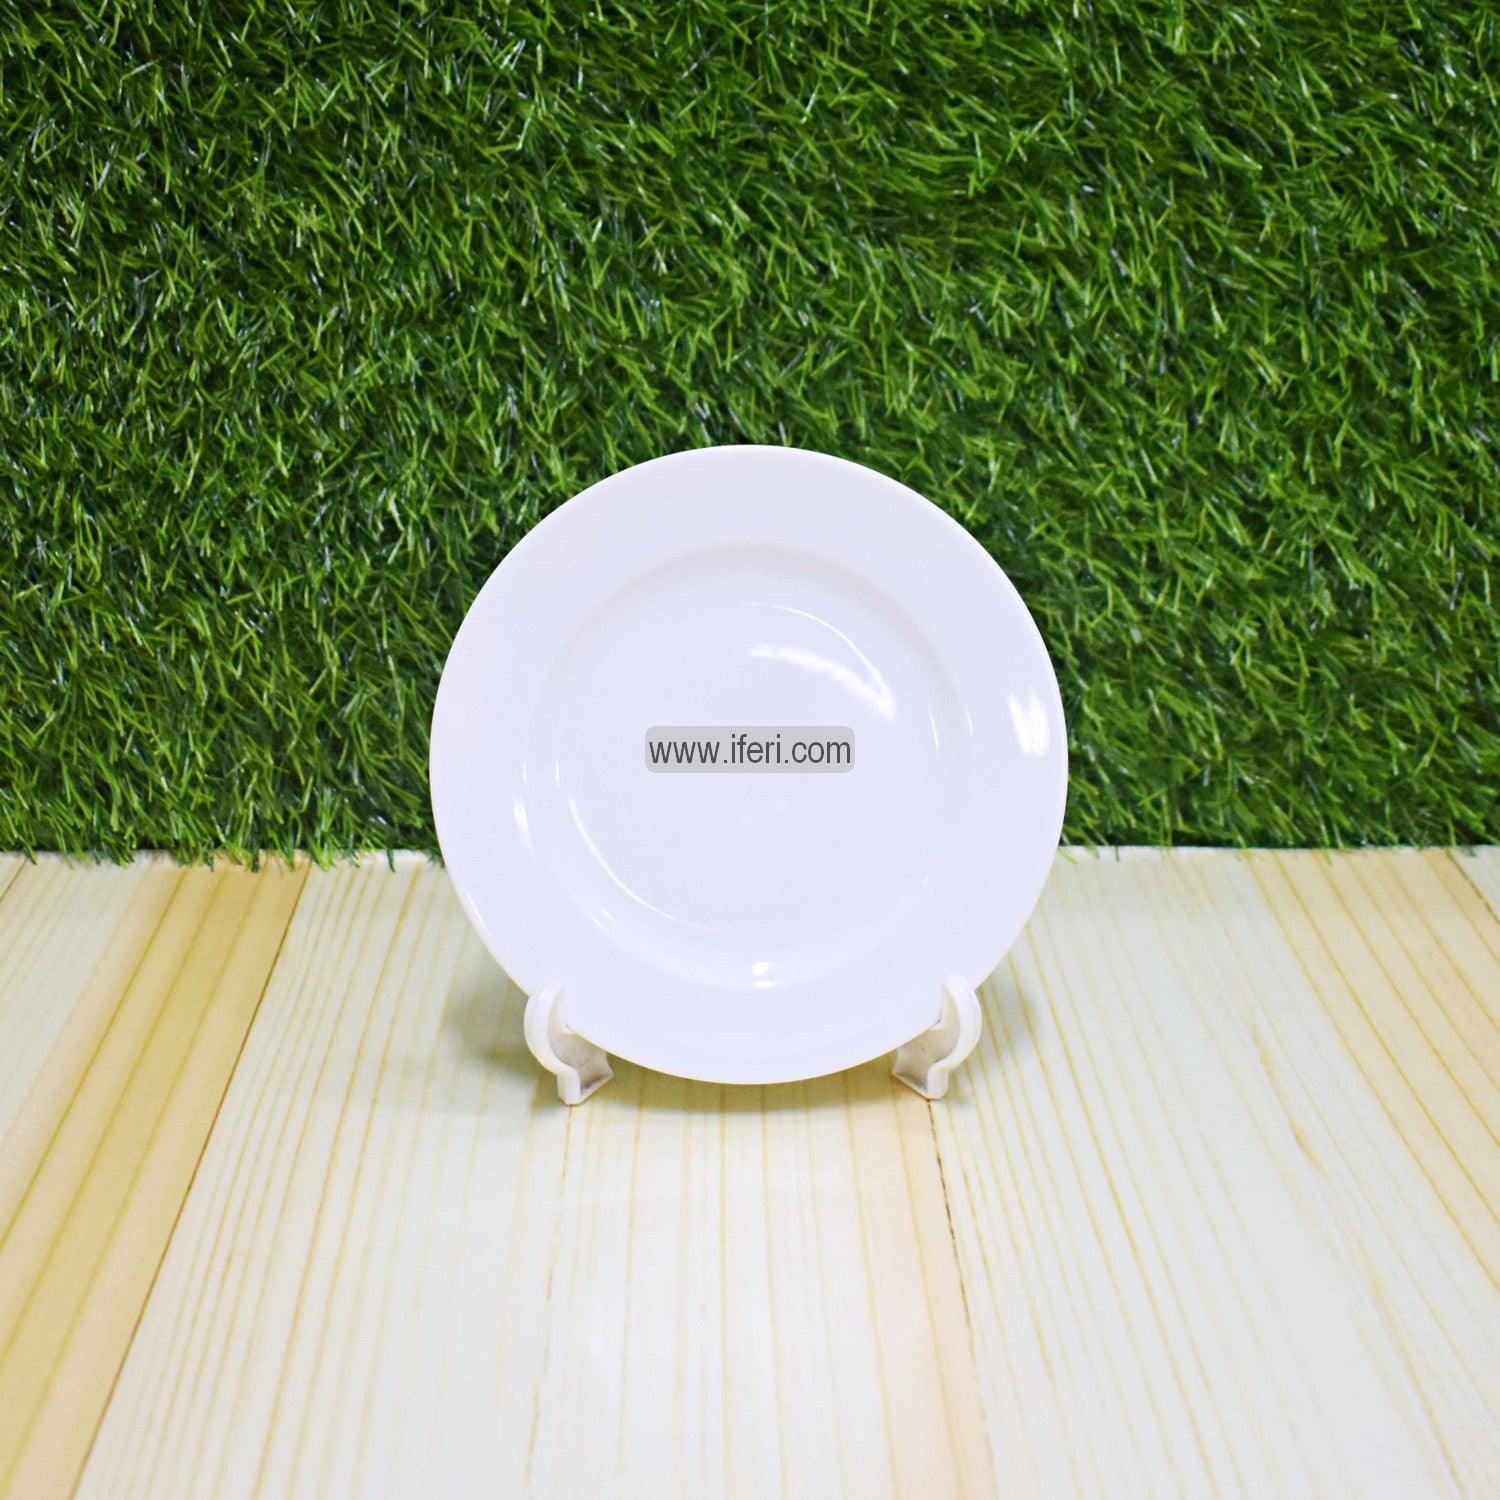 6.2 inch 6 Pcs White Ceramic Saucer Set SN0670 Price in Bangladesh - iferi.com